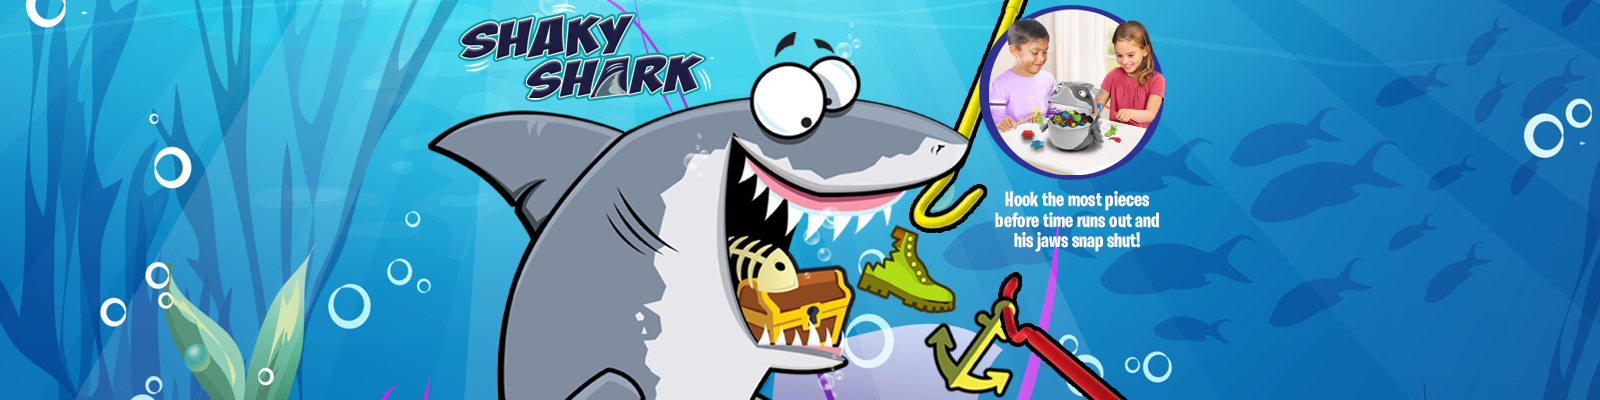 Shaky Shark™